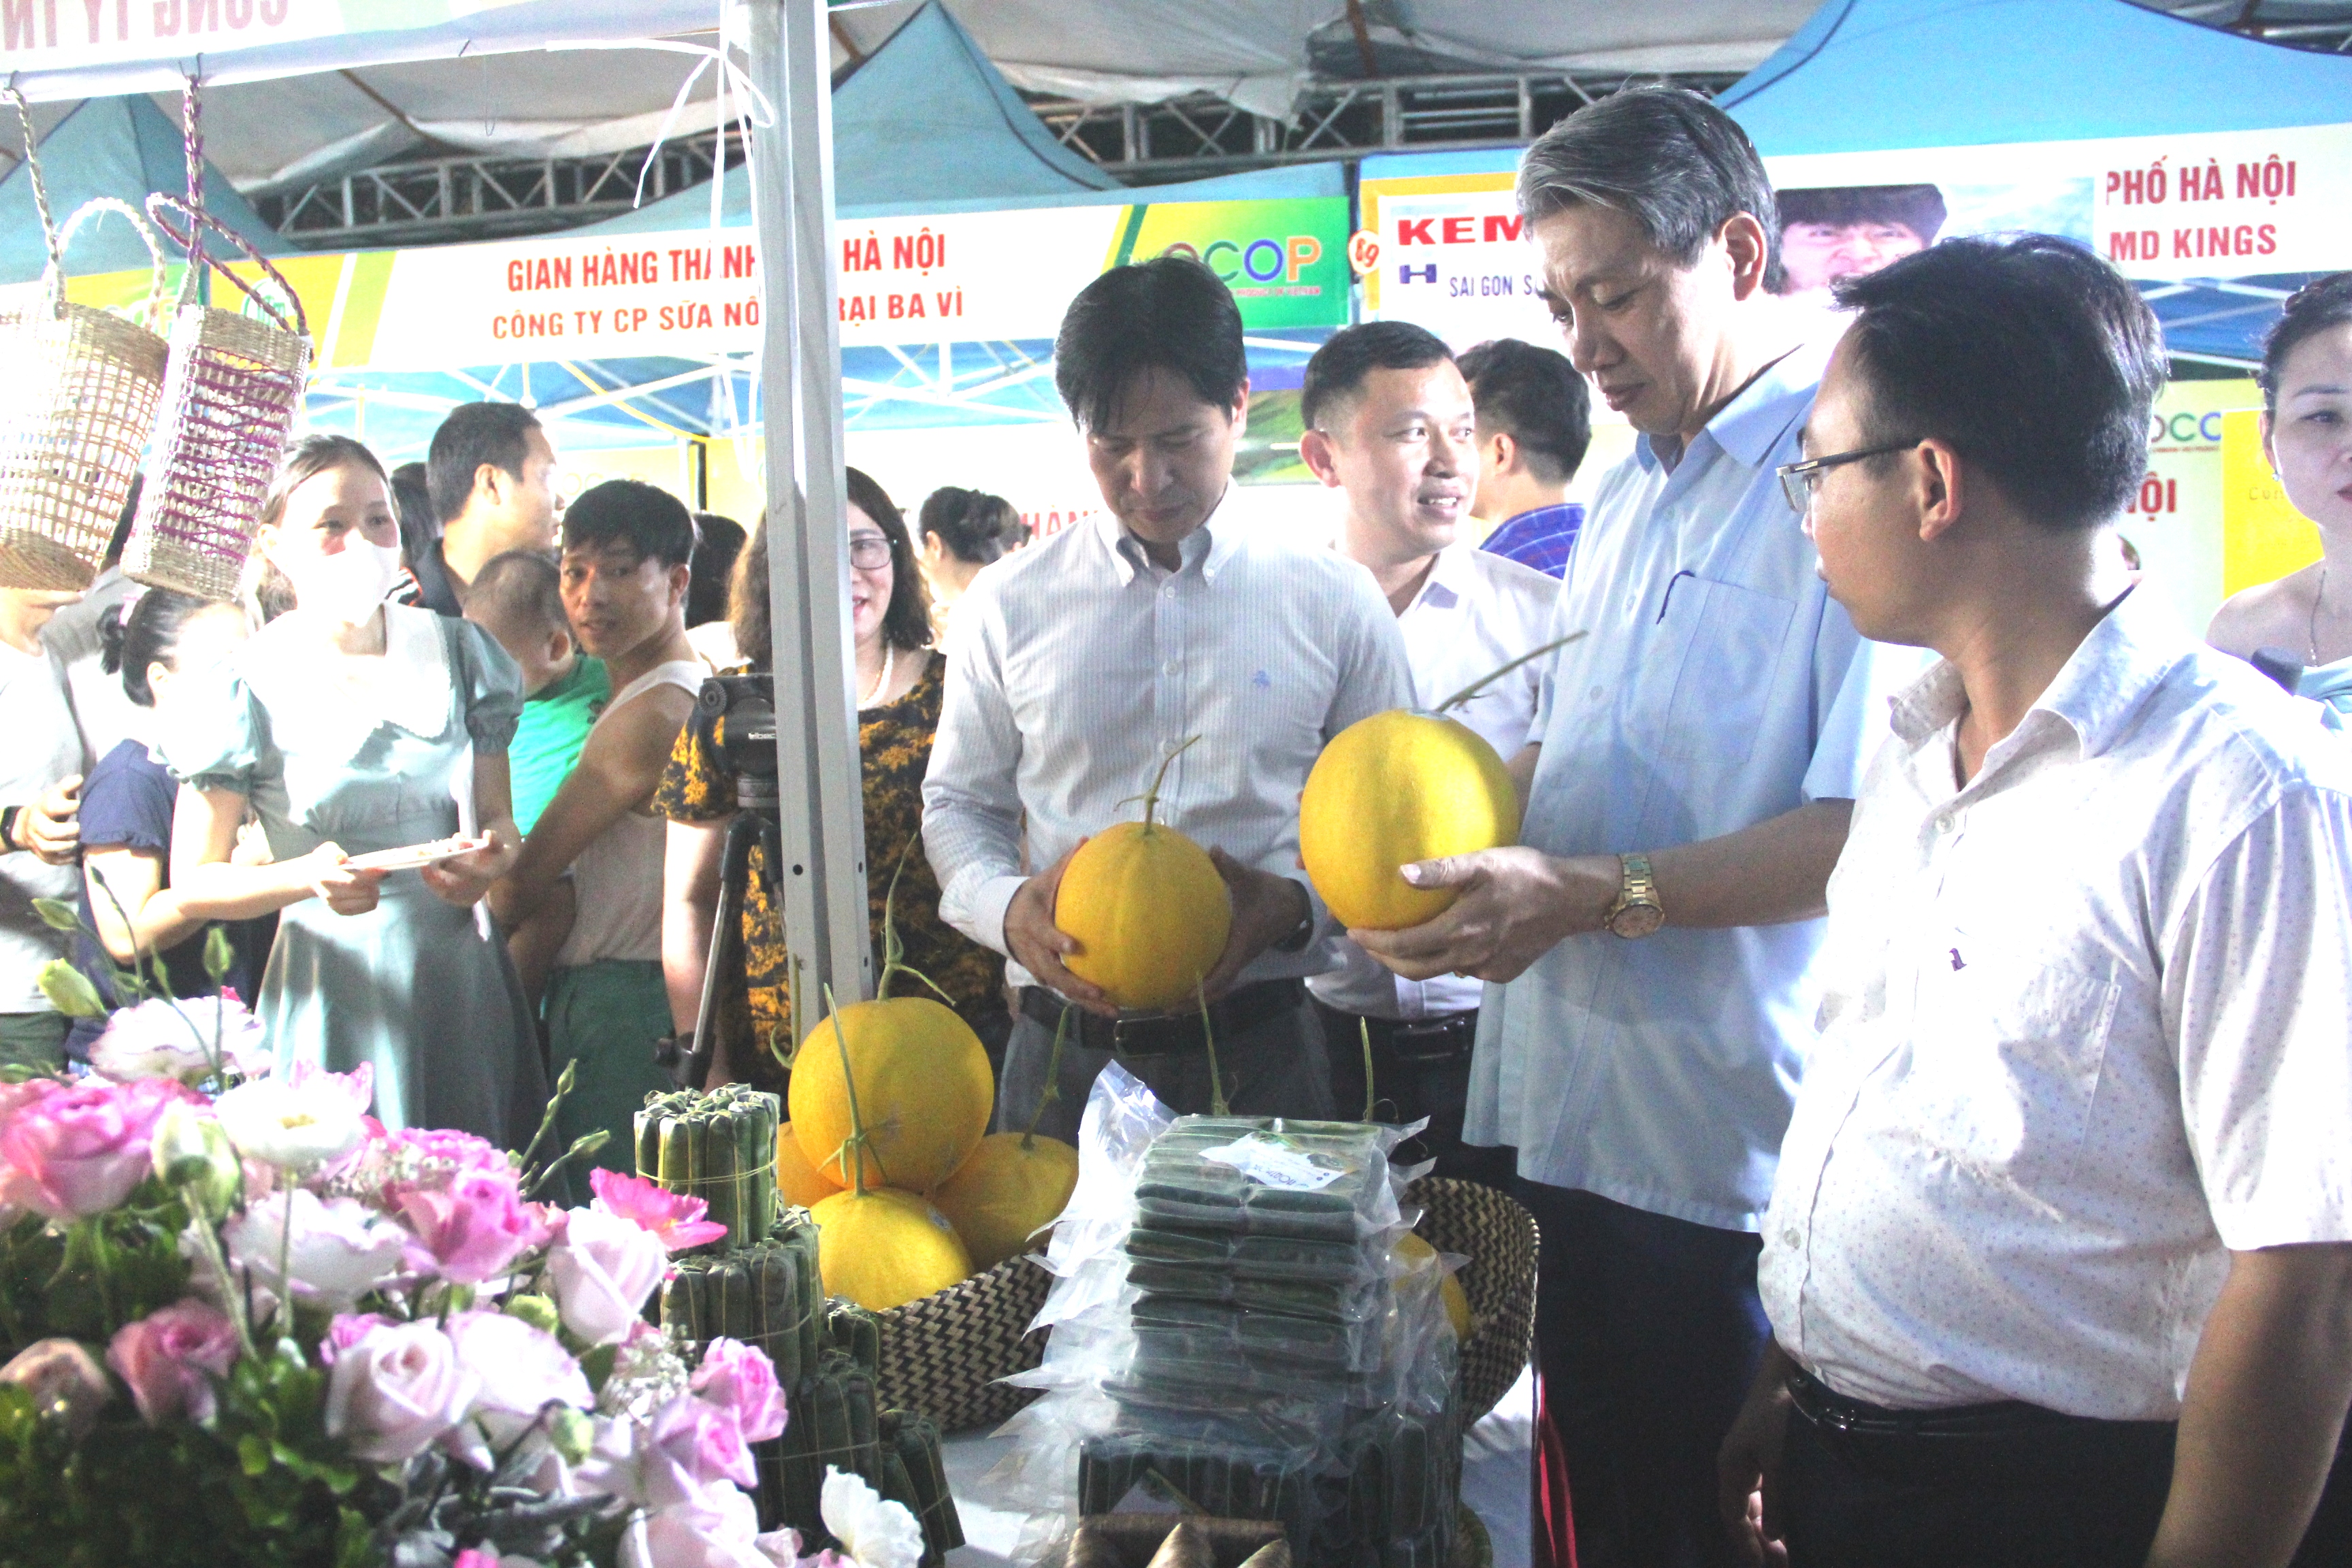 Thanh Hóa trưng bày 4 gian hàng sản phẩm OCOP tại Hà Nội